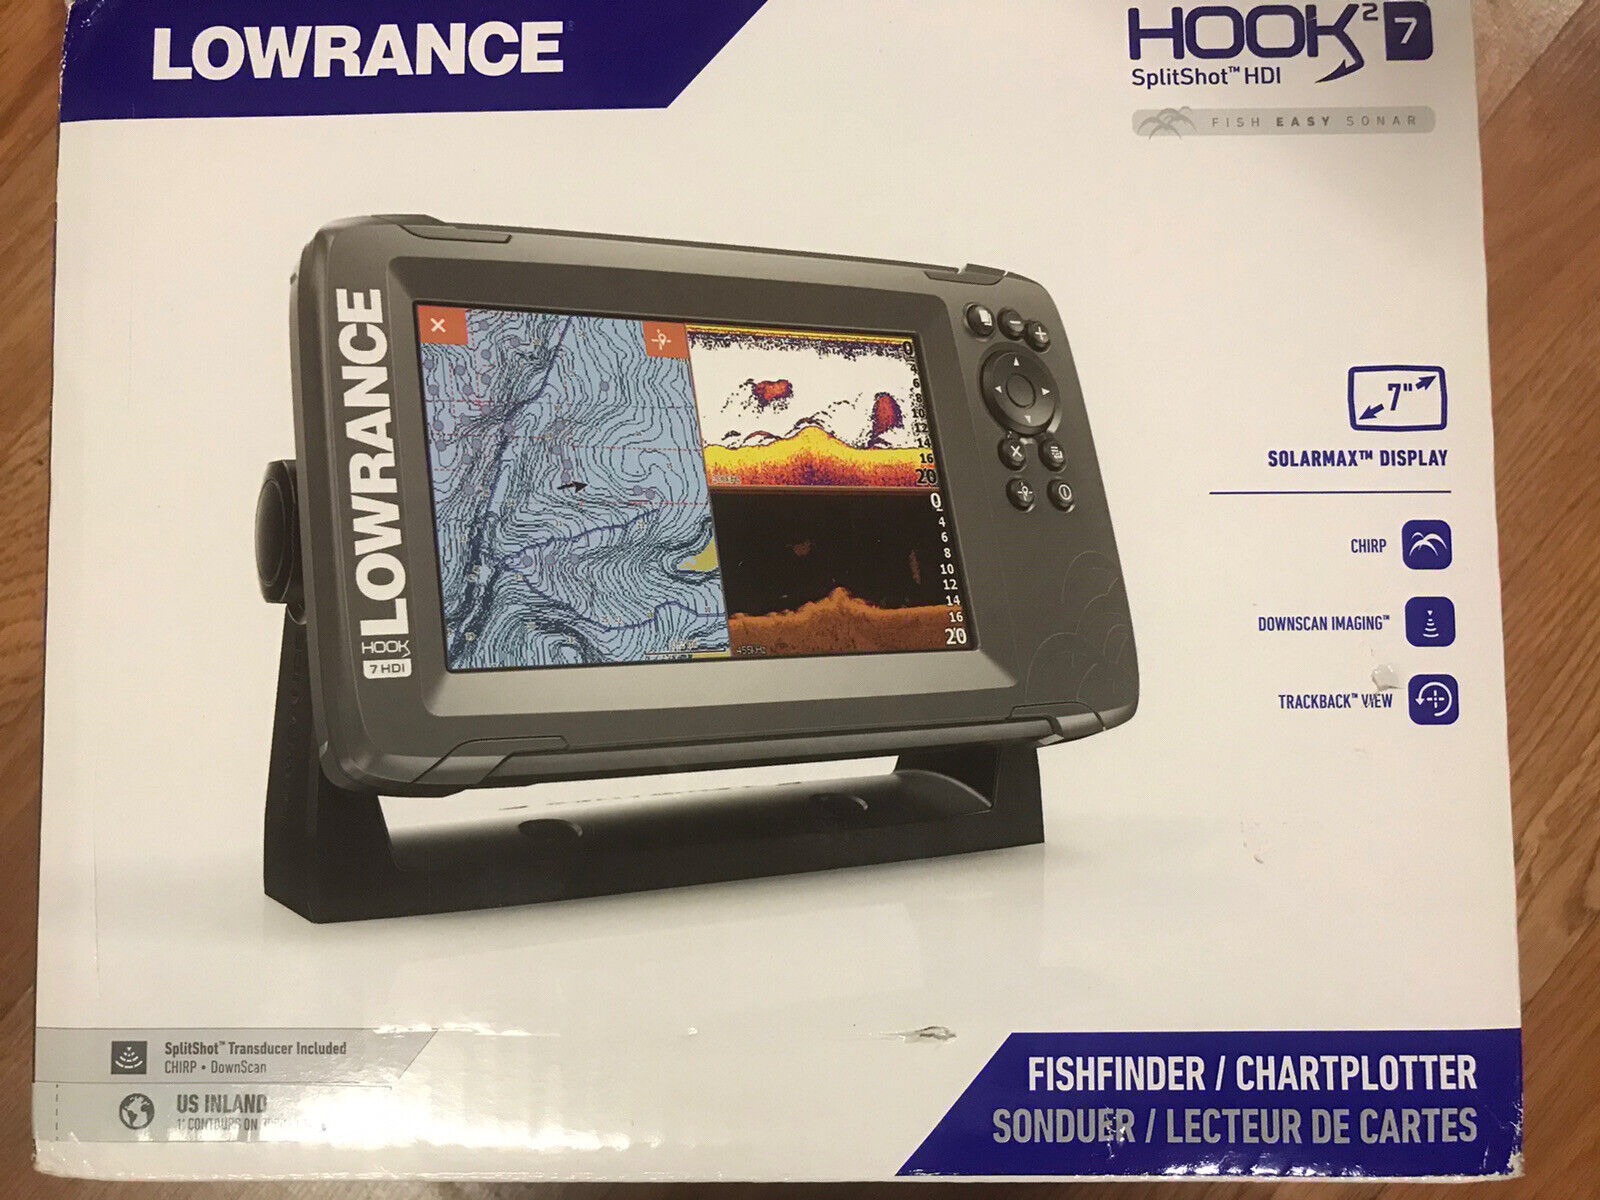 Lowrance Hook 2 Splitshot 7 HDI Inland 000-14289-001 - Complete Setup